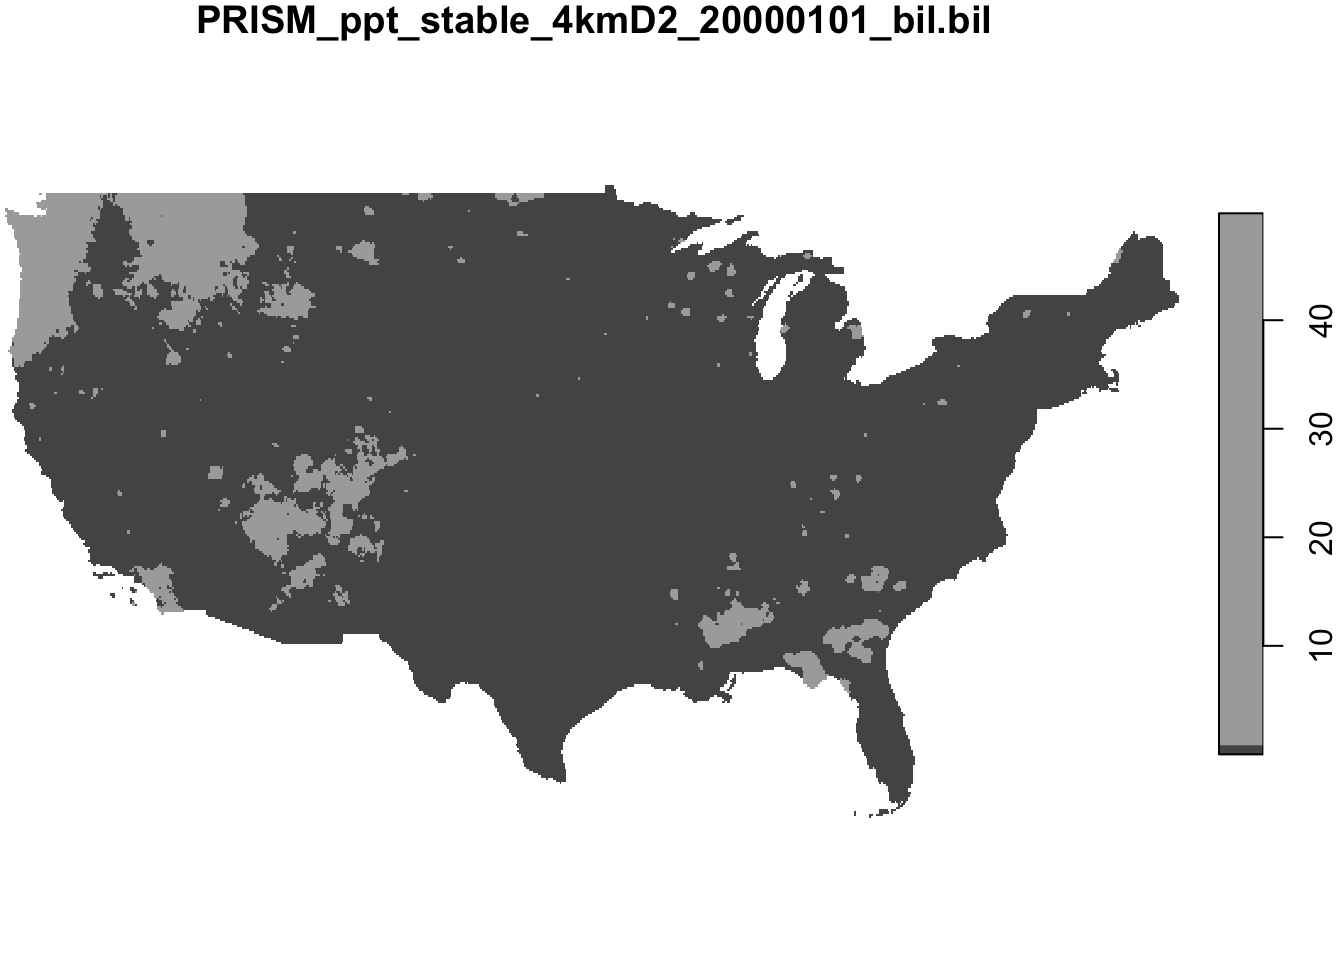 PRISM precipitation data for January 1, 2000